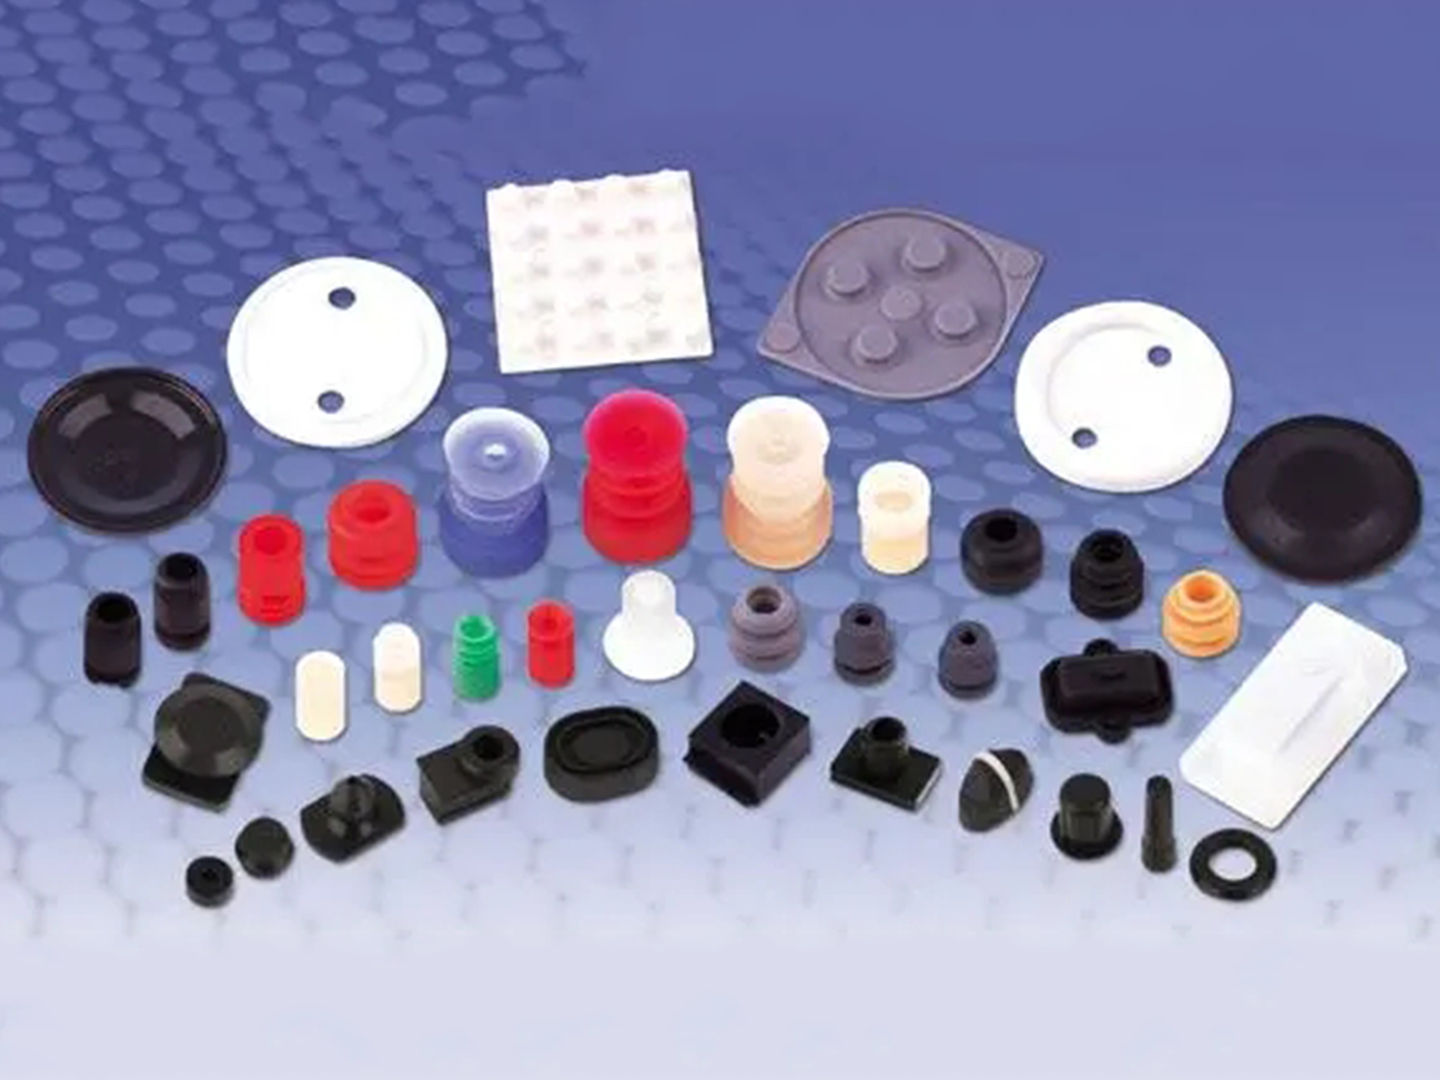 大连安格朗模具制品有限公司集橡胶材料开发、模具设计加工、橡胶制品生产为一体。主营橡胶杂品、非标橡胶制品和定制橡胶制品。